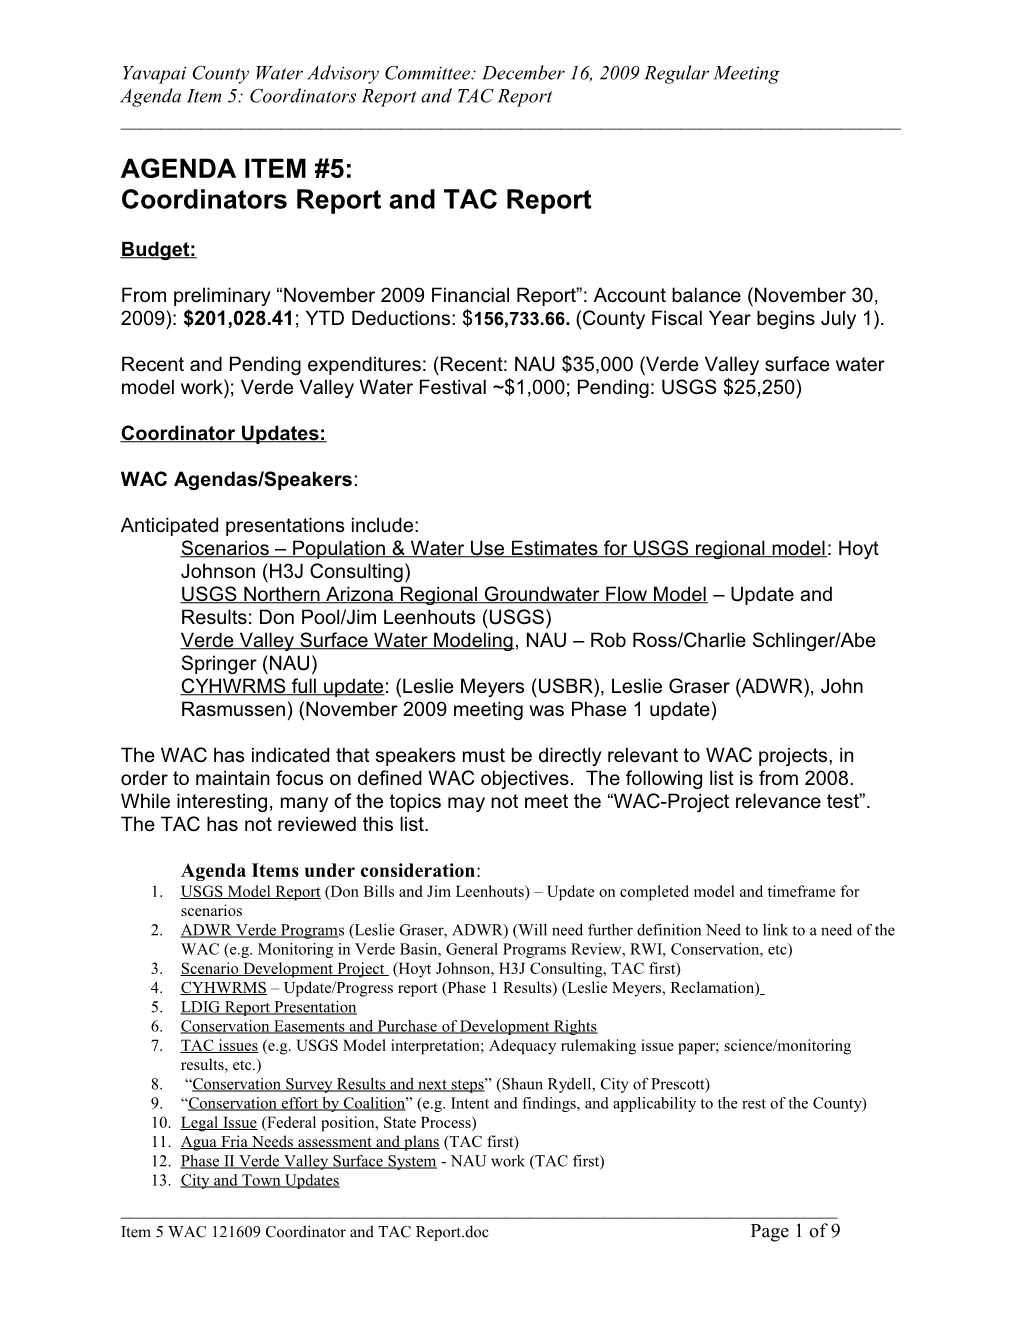 Agenda Item 5: Coordinators Report and TAC Report